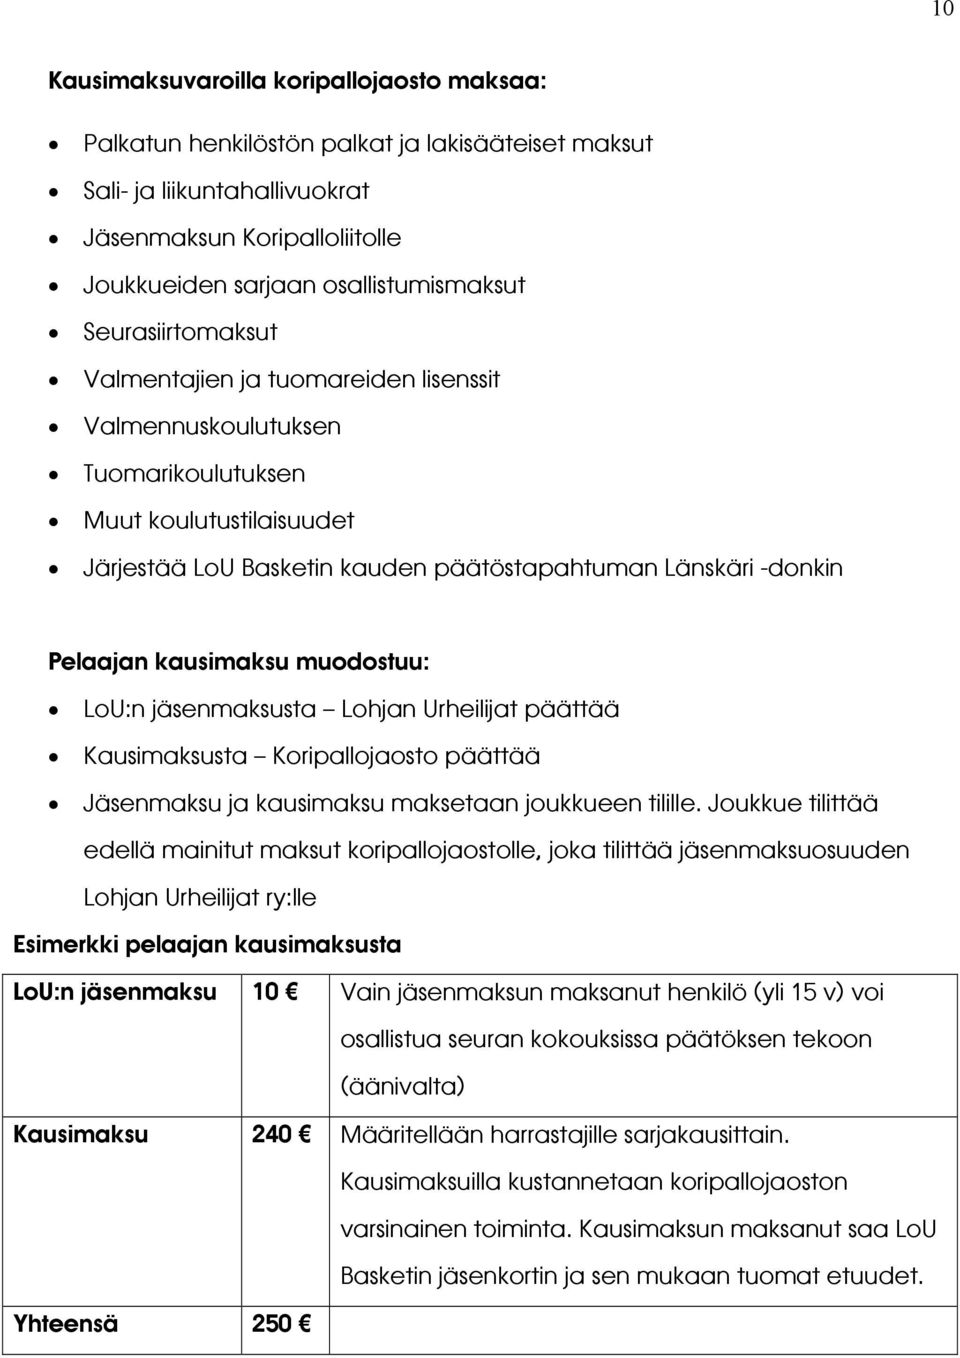 kausimaksu muodostuu: LoU:n jäsenmaksusta Lohjan Urheilijat päättää Kausimaksusta Koripallojaosto päättää Jäsenmaksu ja kausimaksu maksetaan joukkueen tilille.